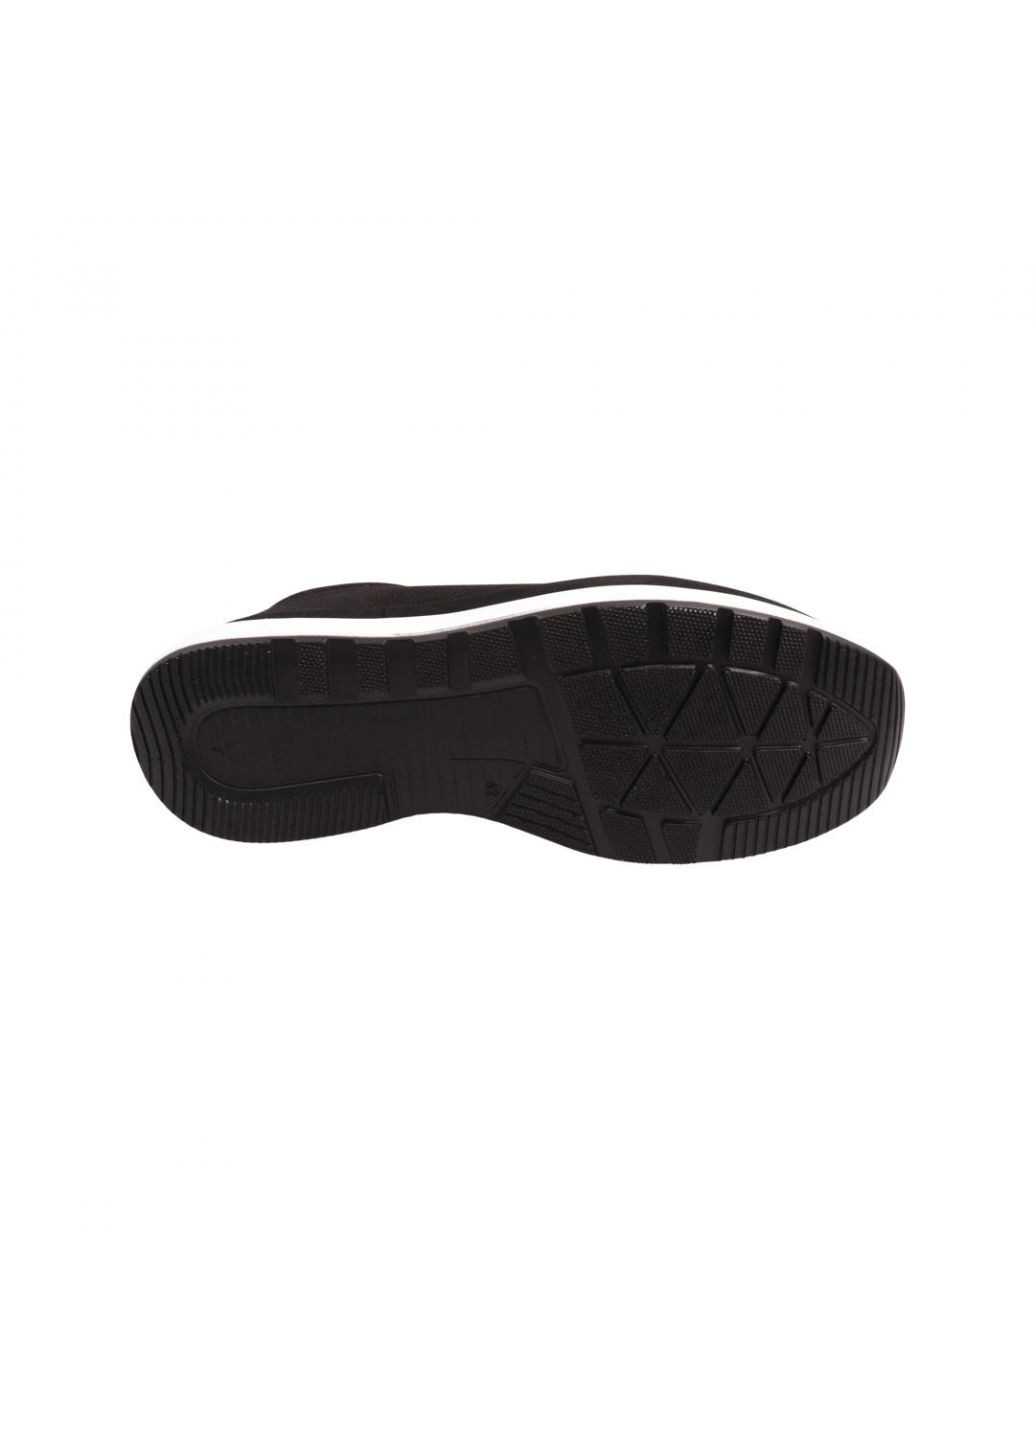 Черные кроссовки мужские черные натуральная кожа Ridge 458-22LTCP